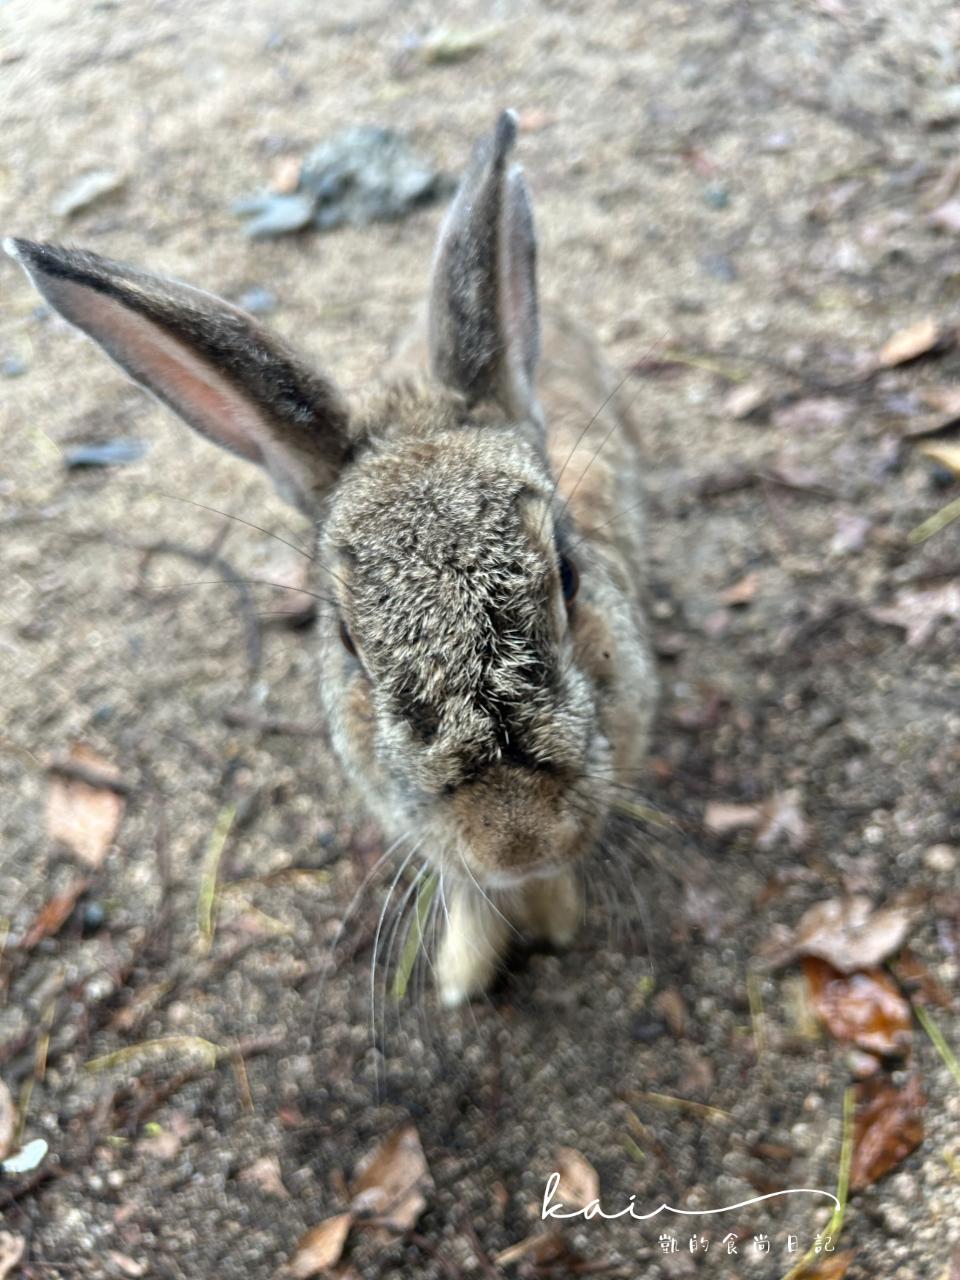 傳說中的兔子島「大久野島」就在日本廣島！被可愛小萌兔包圍太療癒